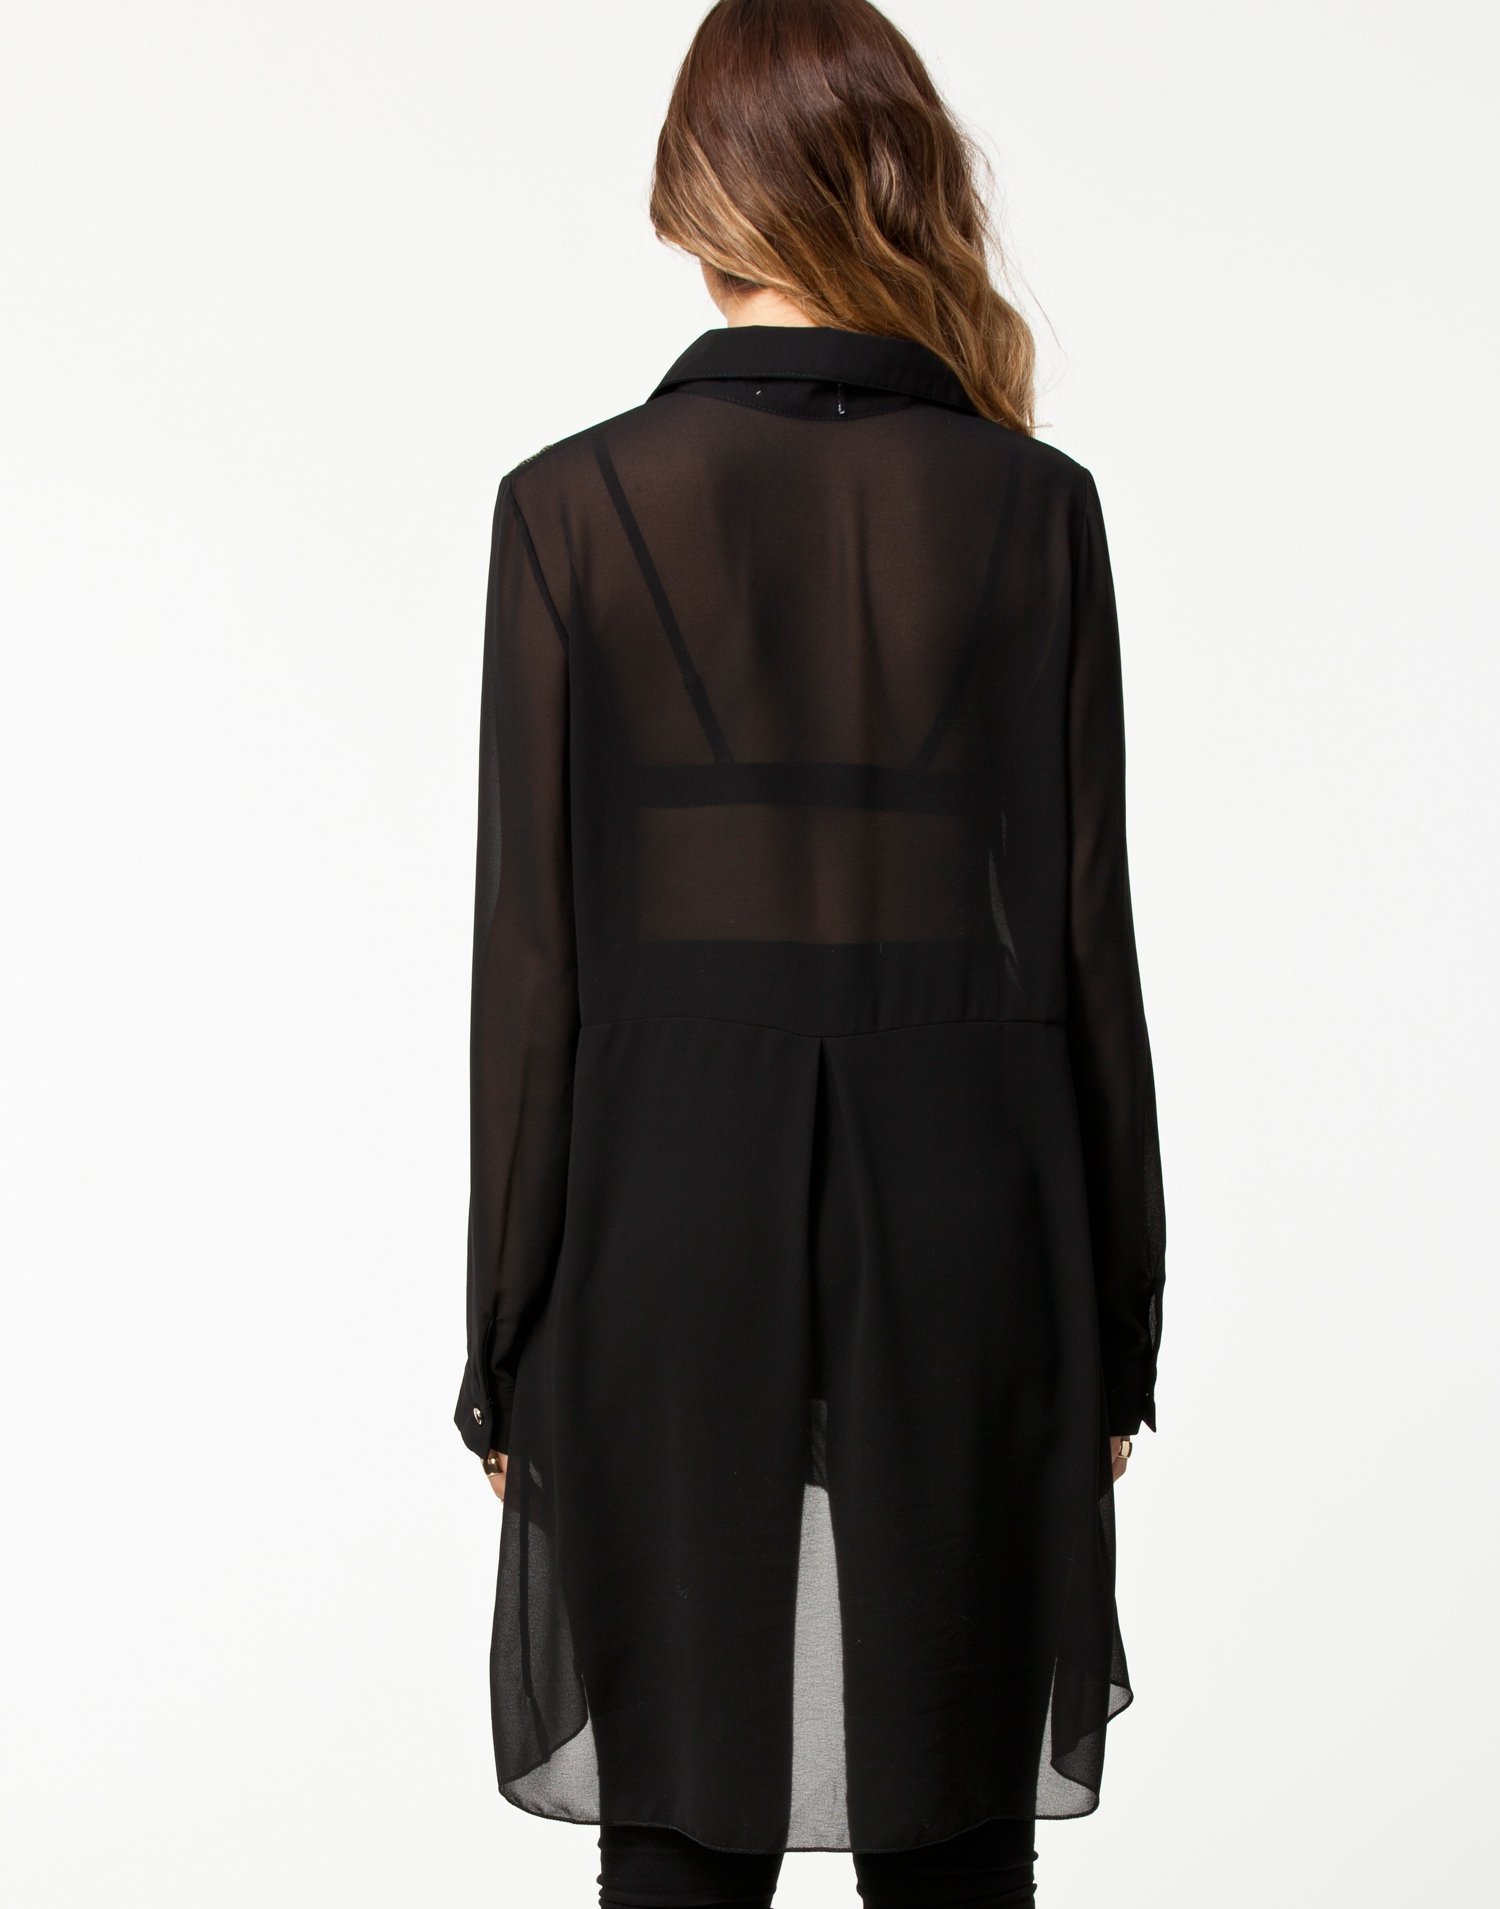 Embellished Blouse - The Style - Black - Blouses & Shirts - Clothing ...